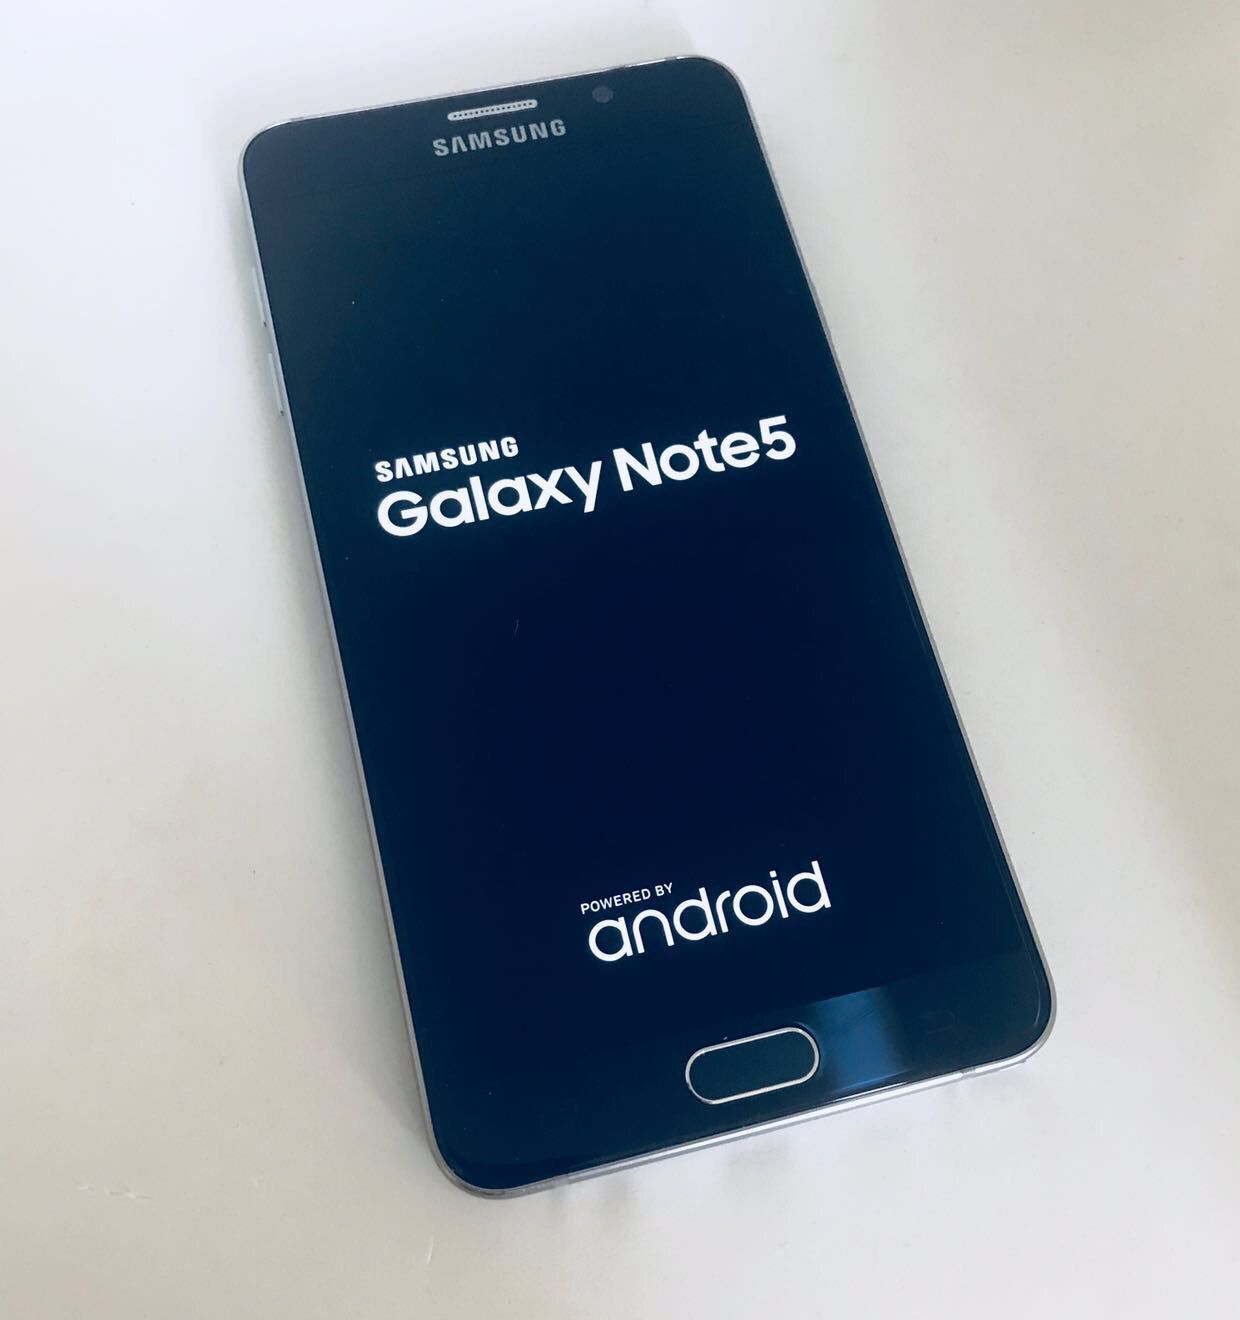 Samsun Galaxy Note 5 32GB Unlocked